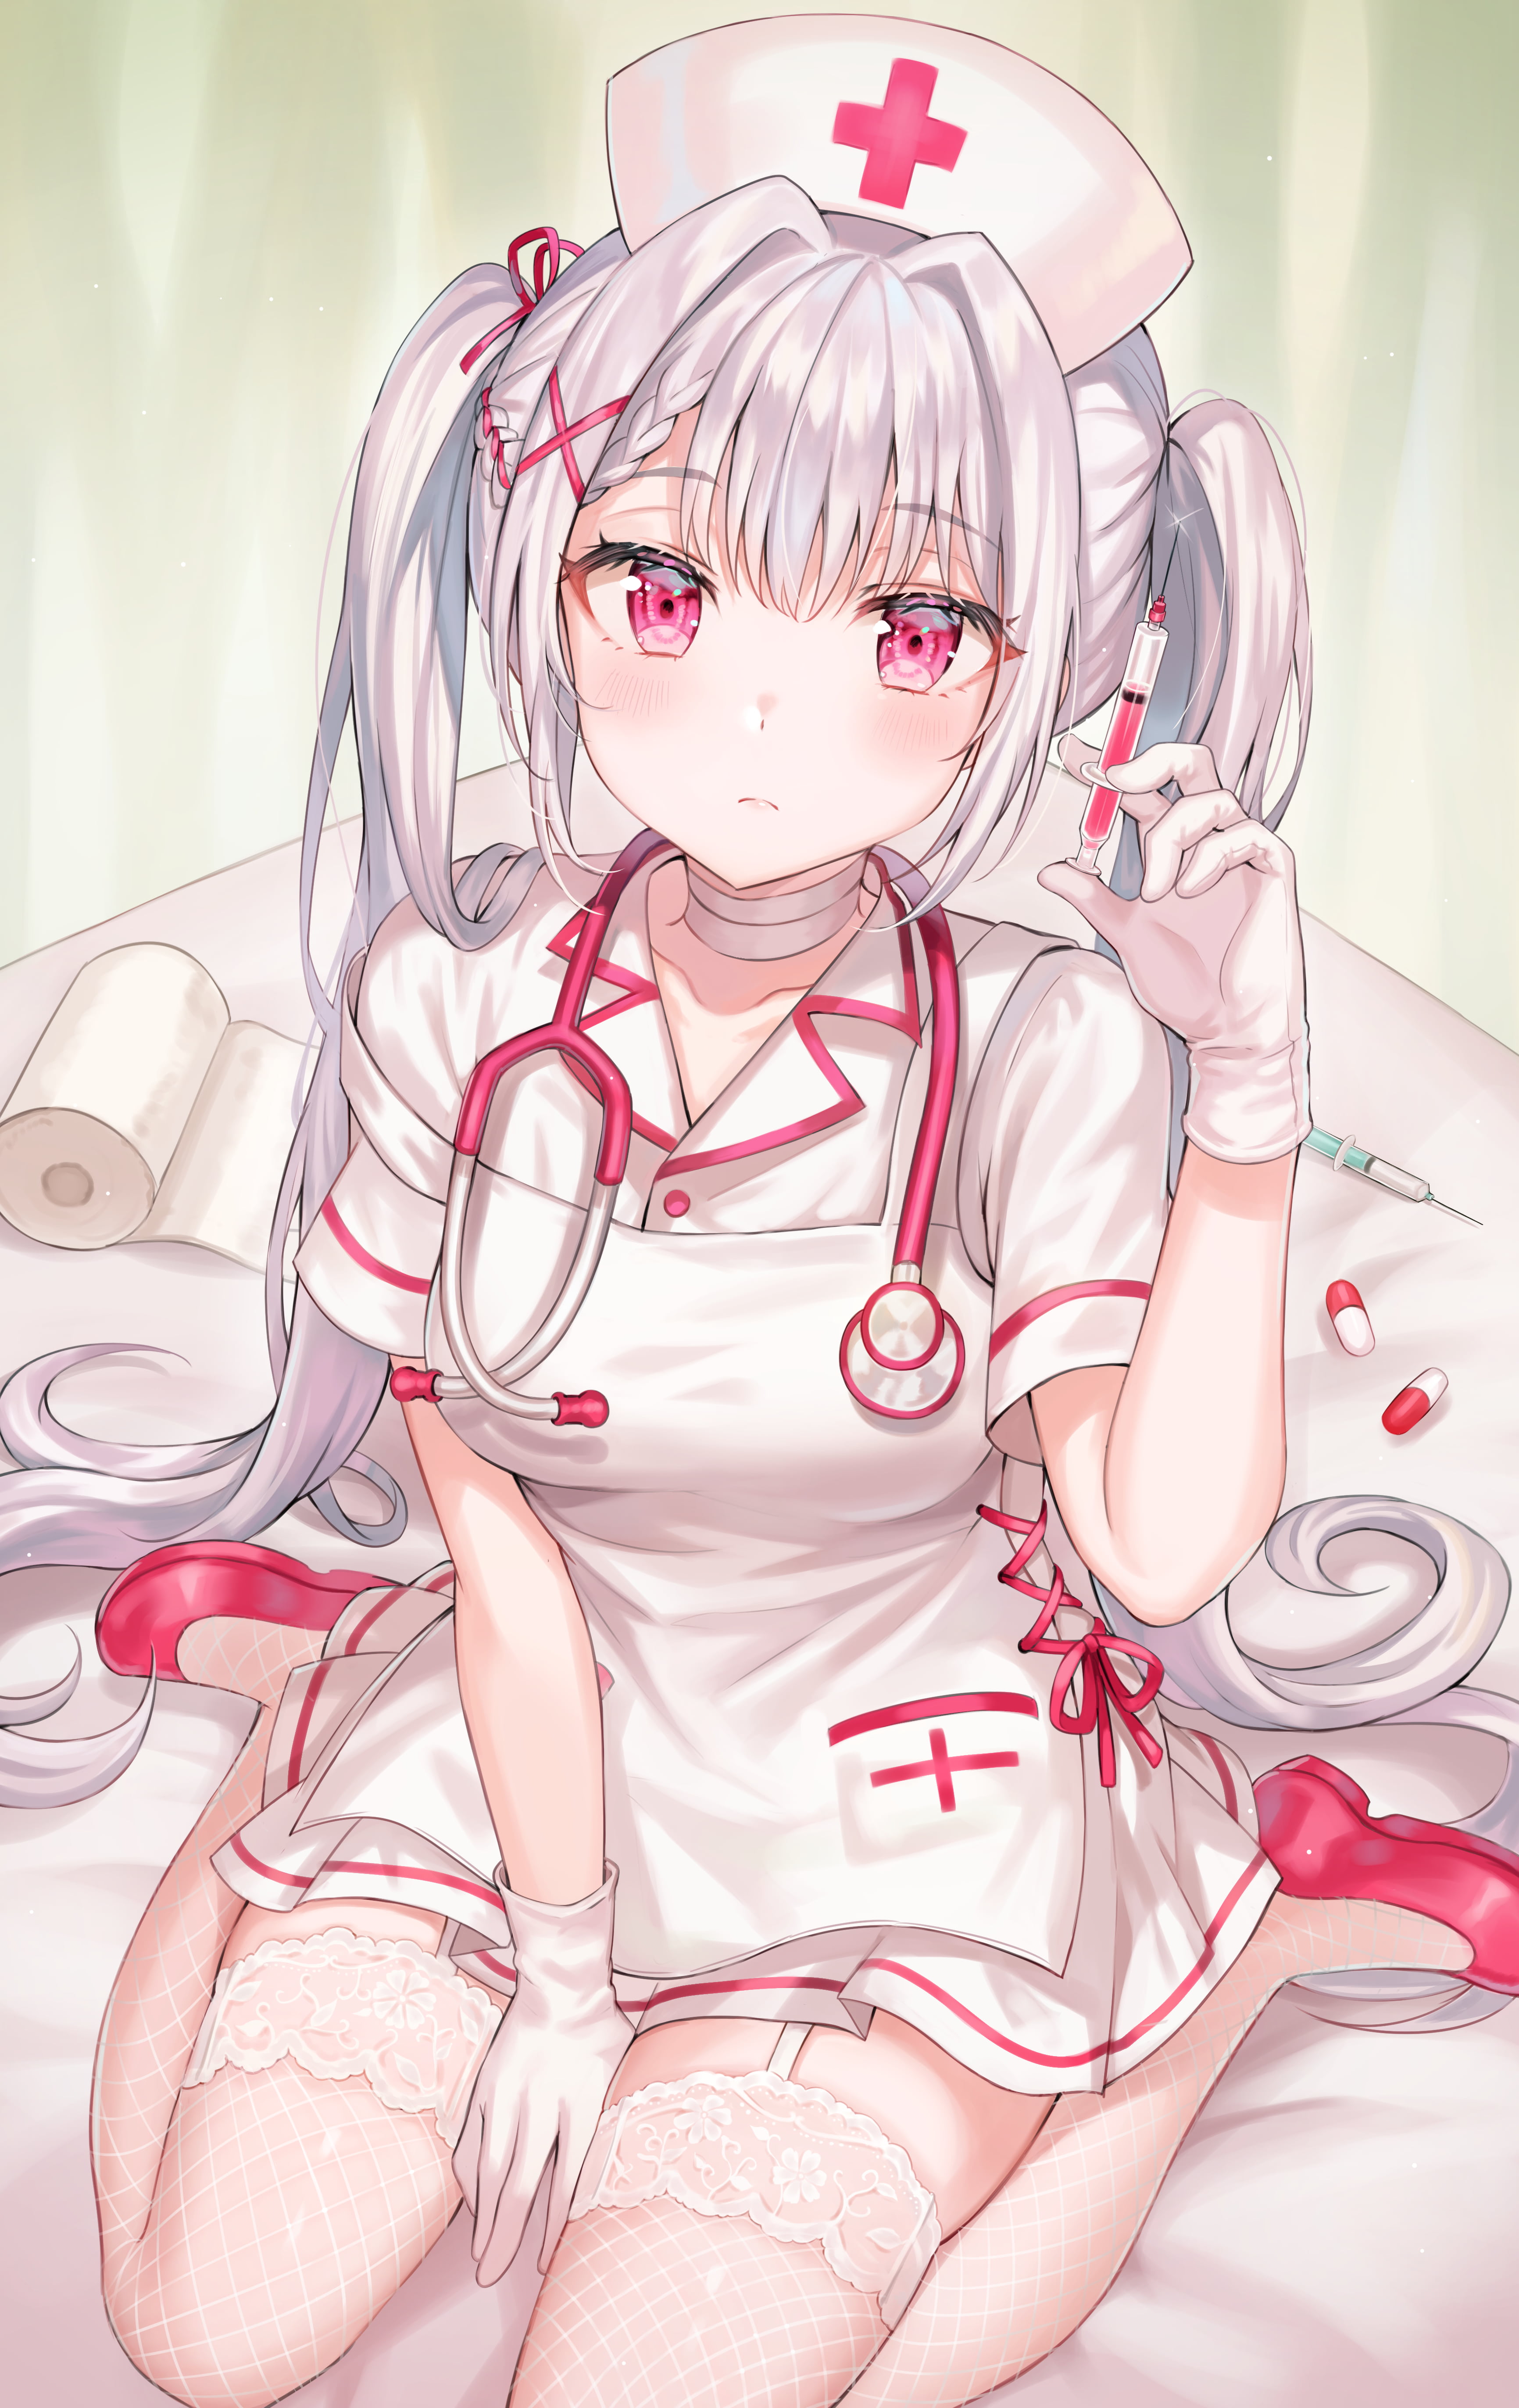 Anime 3463x5488 anime girls original characters anime artwork Tokkyu (artista) nurse outfit